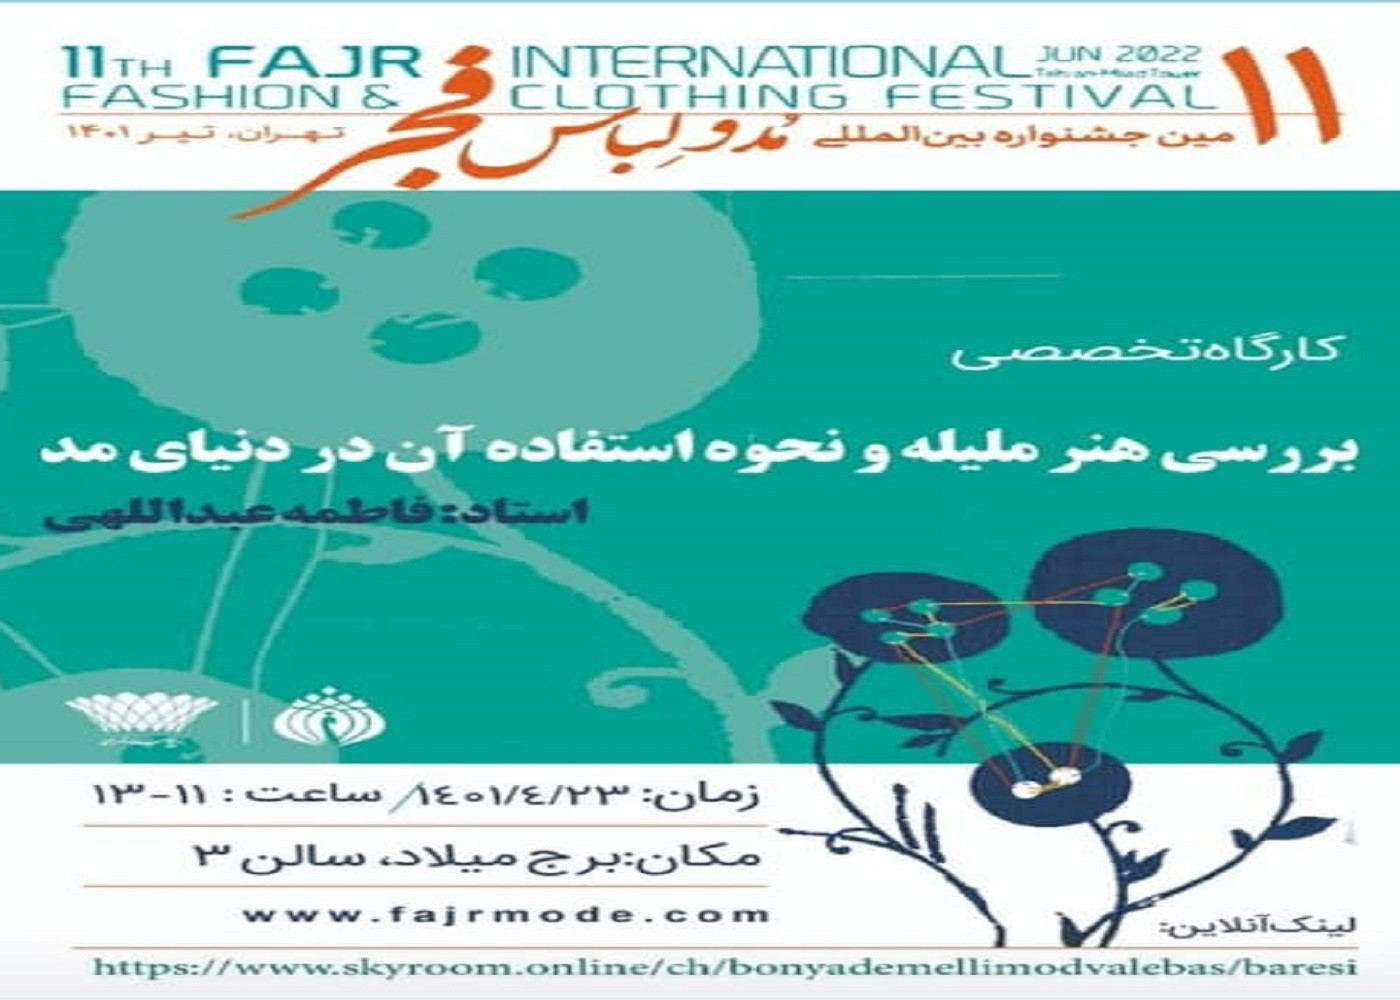 حضور پیشران طرح ملی توسعه مشاغل خانگی (زنجان) در یازدهمین جشنواره بین المللی مد و لباس فجر